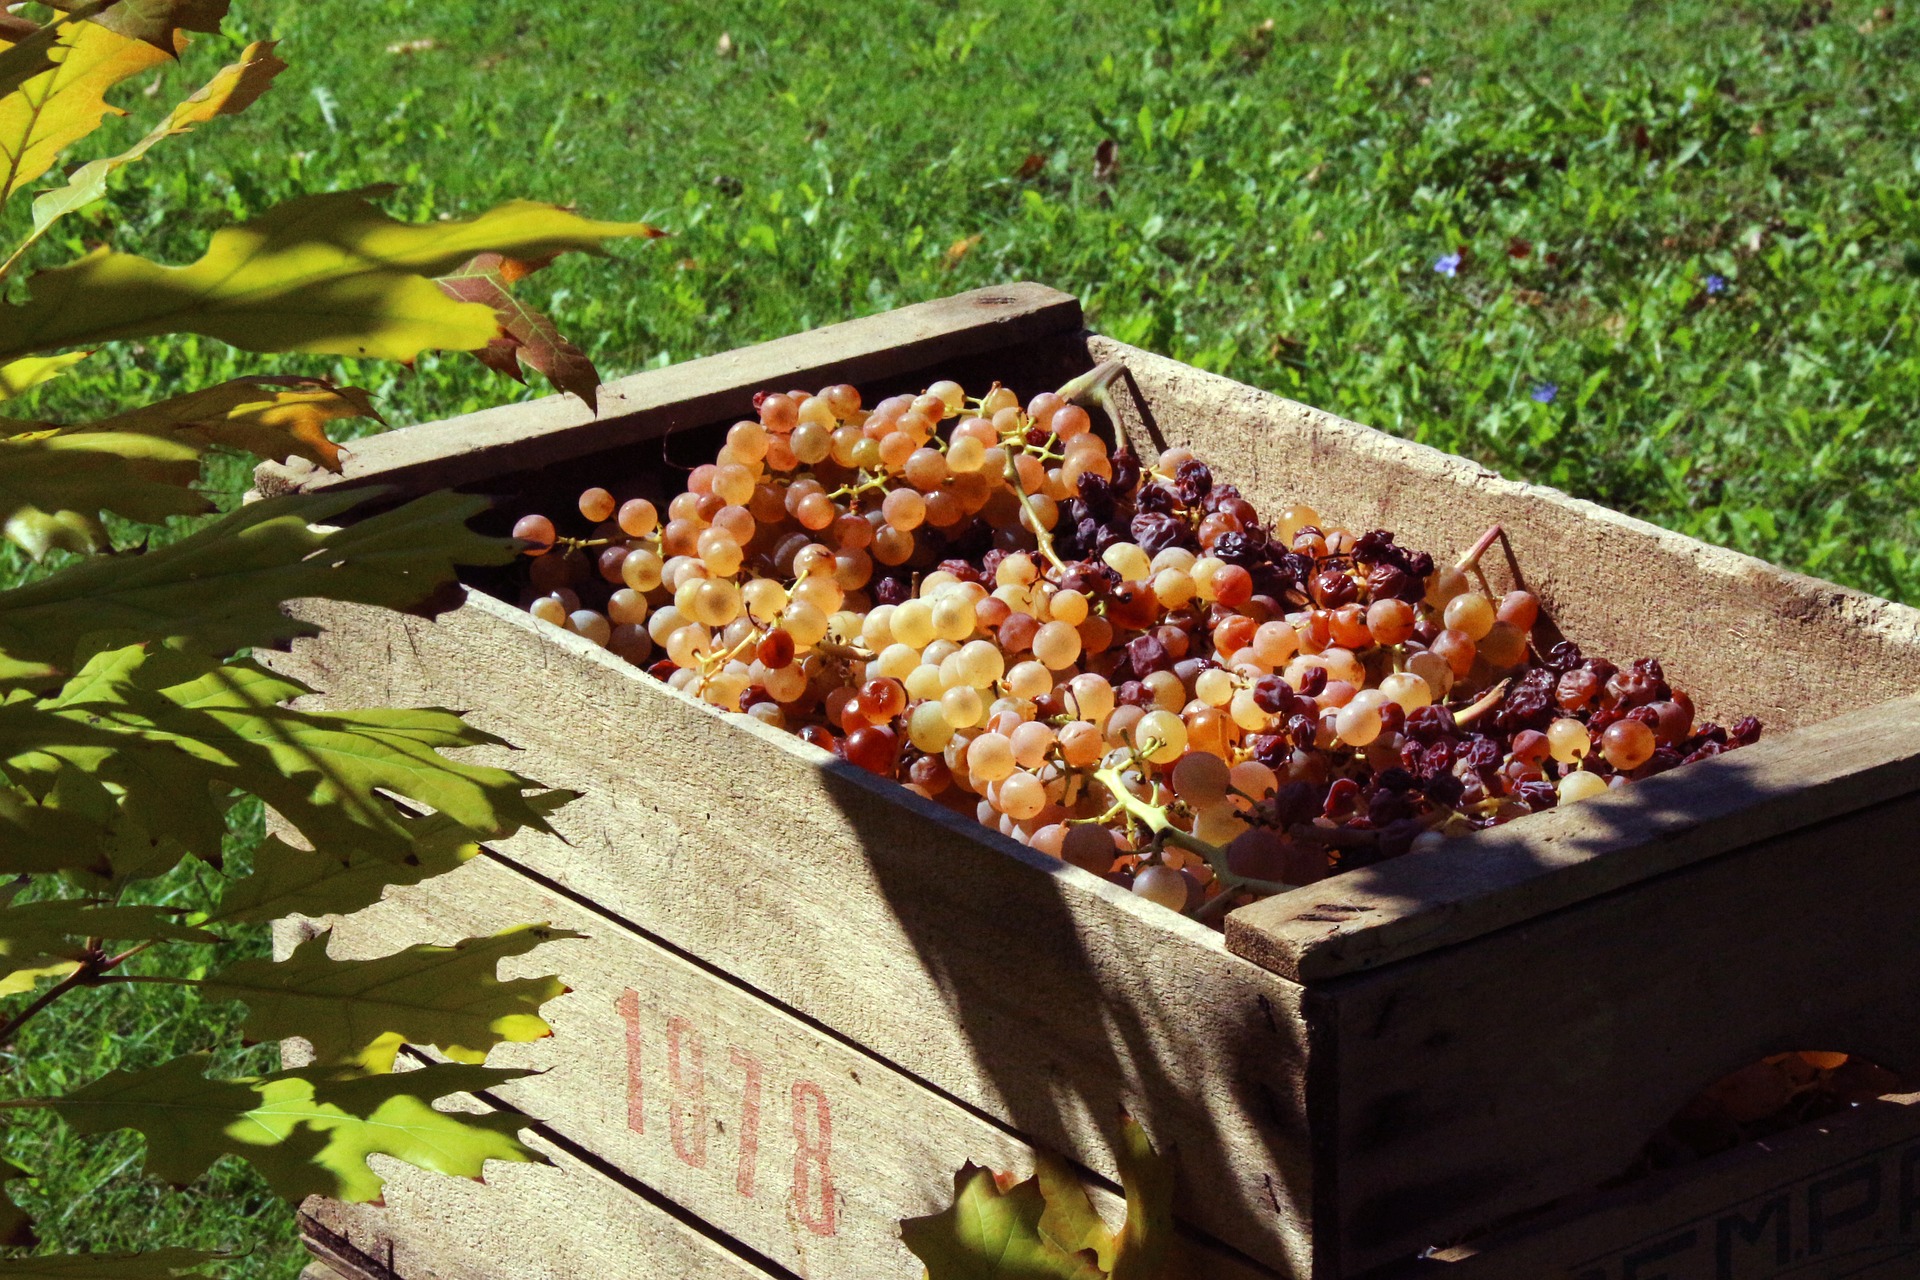 ワイン用語「ヴィンテージ」の説明。年号の書かれた木箱にいっぱいの収獲されたぶどう。